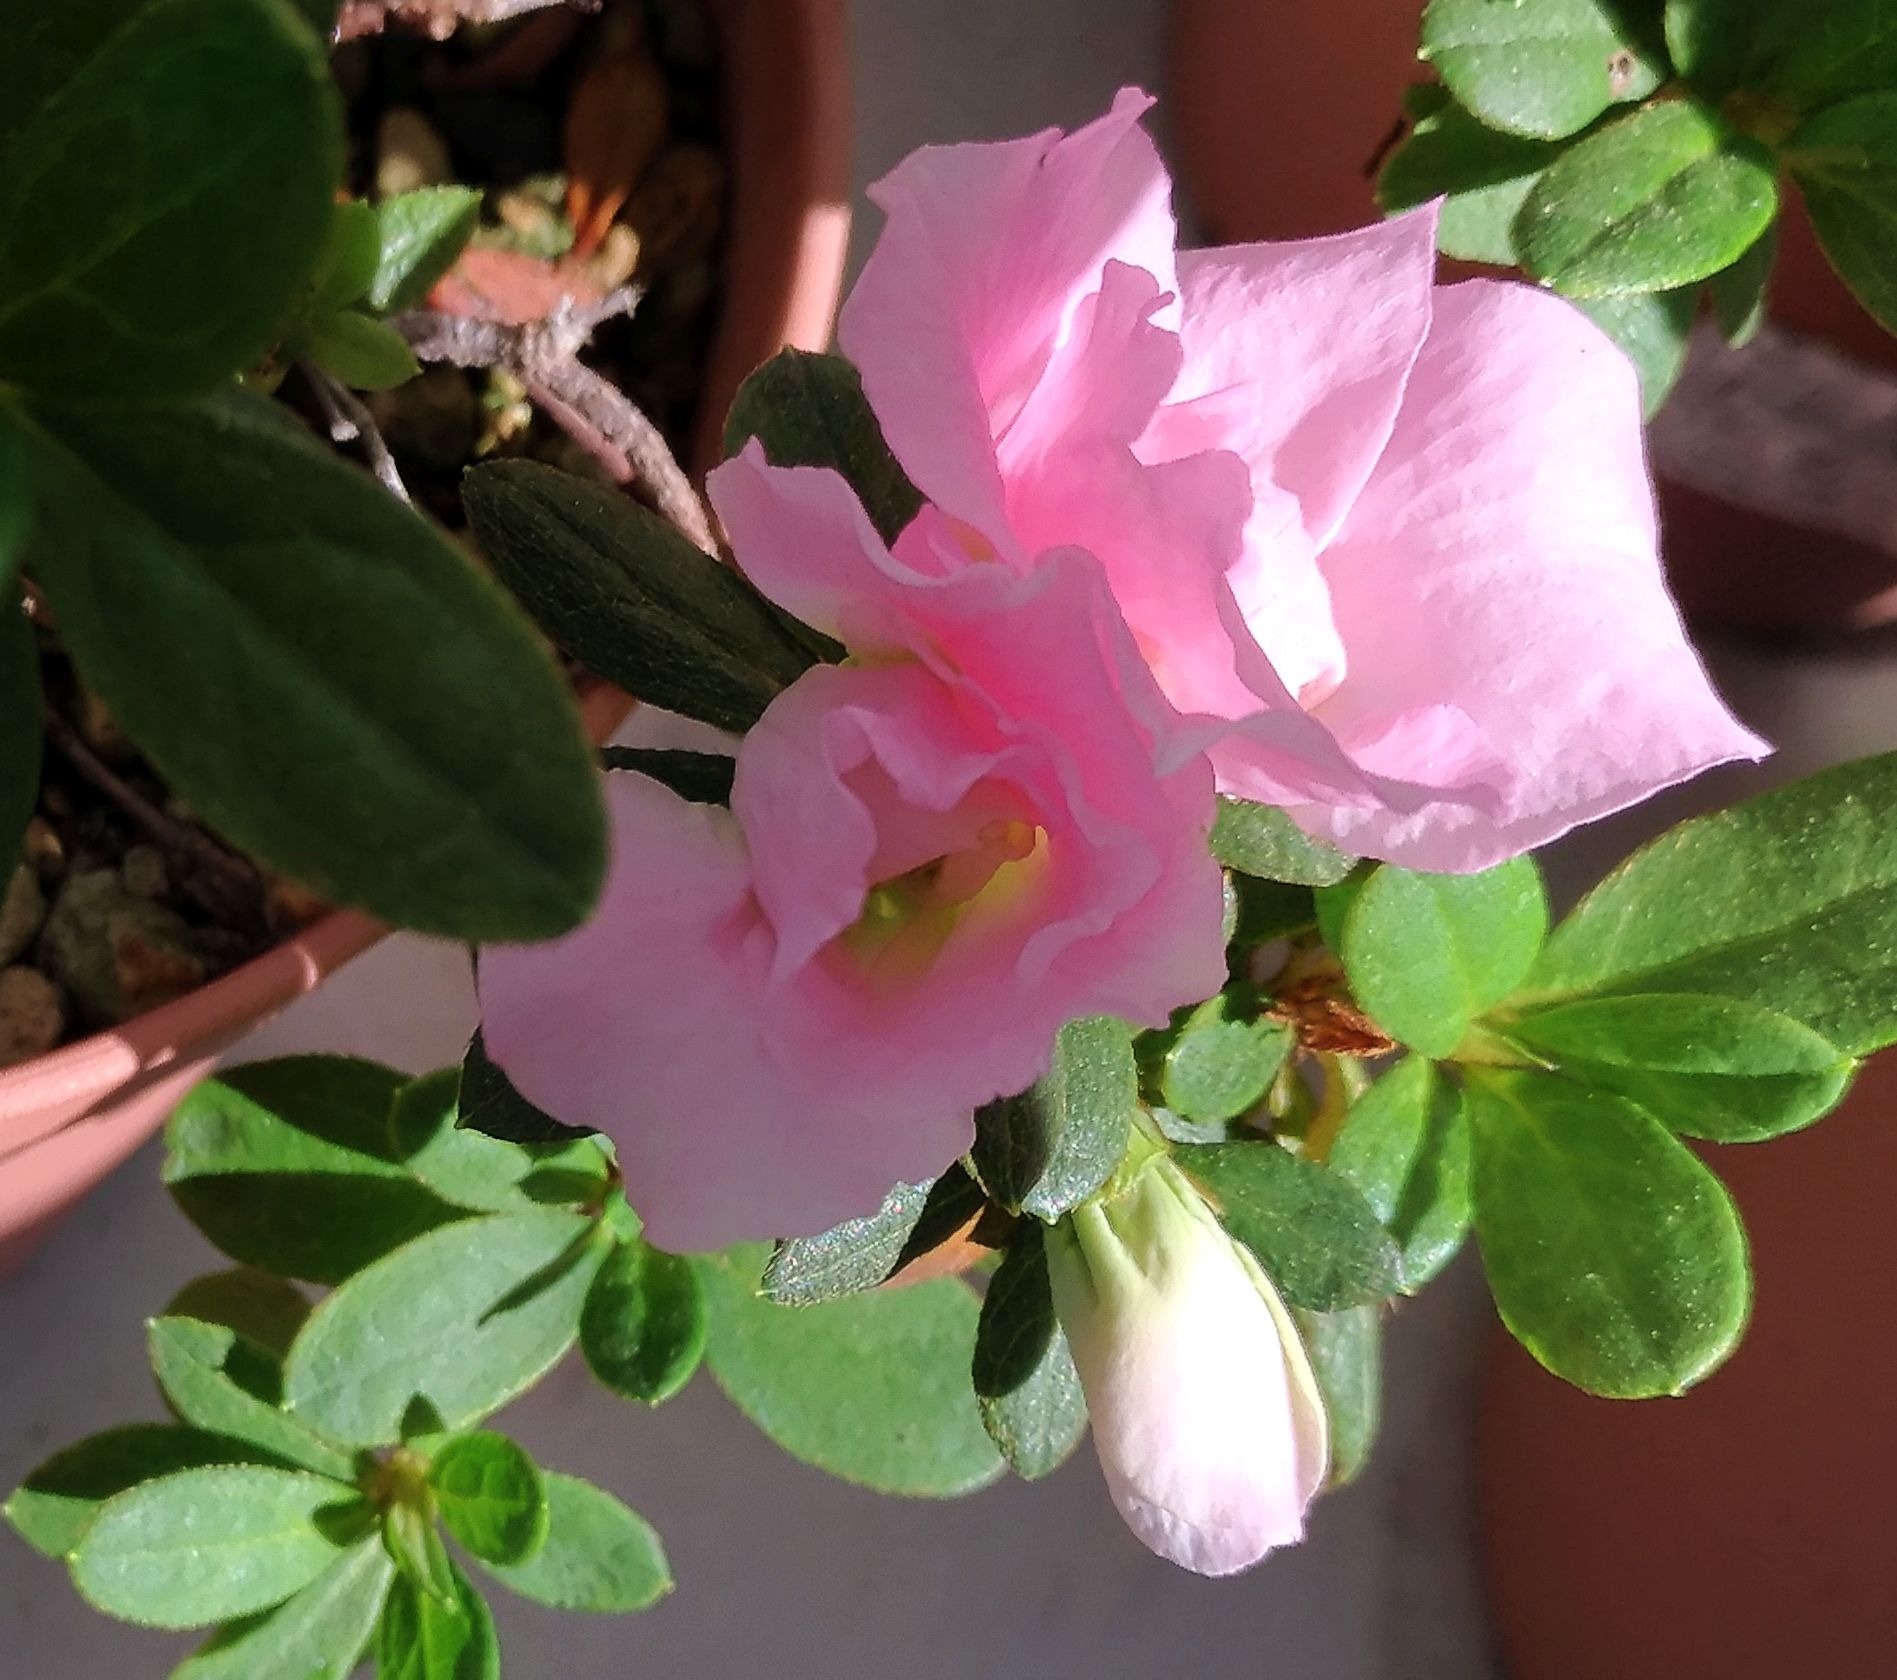 こころんグリーン アザレアの新しい花が開きました 今の時期に次々に咲いています 綺麗なピンク色が輝いています アザレア 新しい花 ピンク色 ツツジ科 初秋の花 初秋 園芸品種 園芸 ガーデニング 熊本市南区 熊本 T Co Ilv3nnwnch